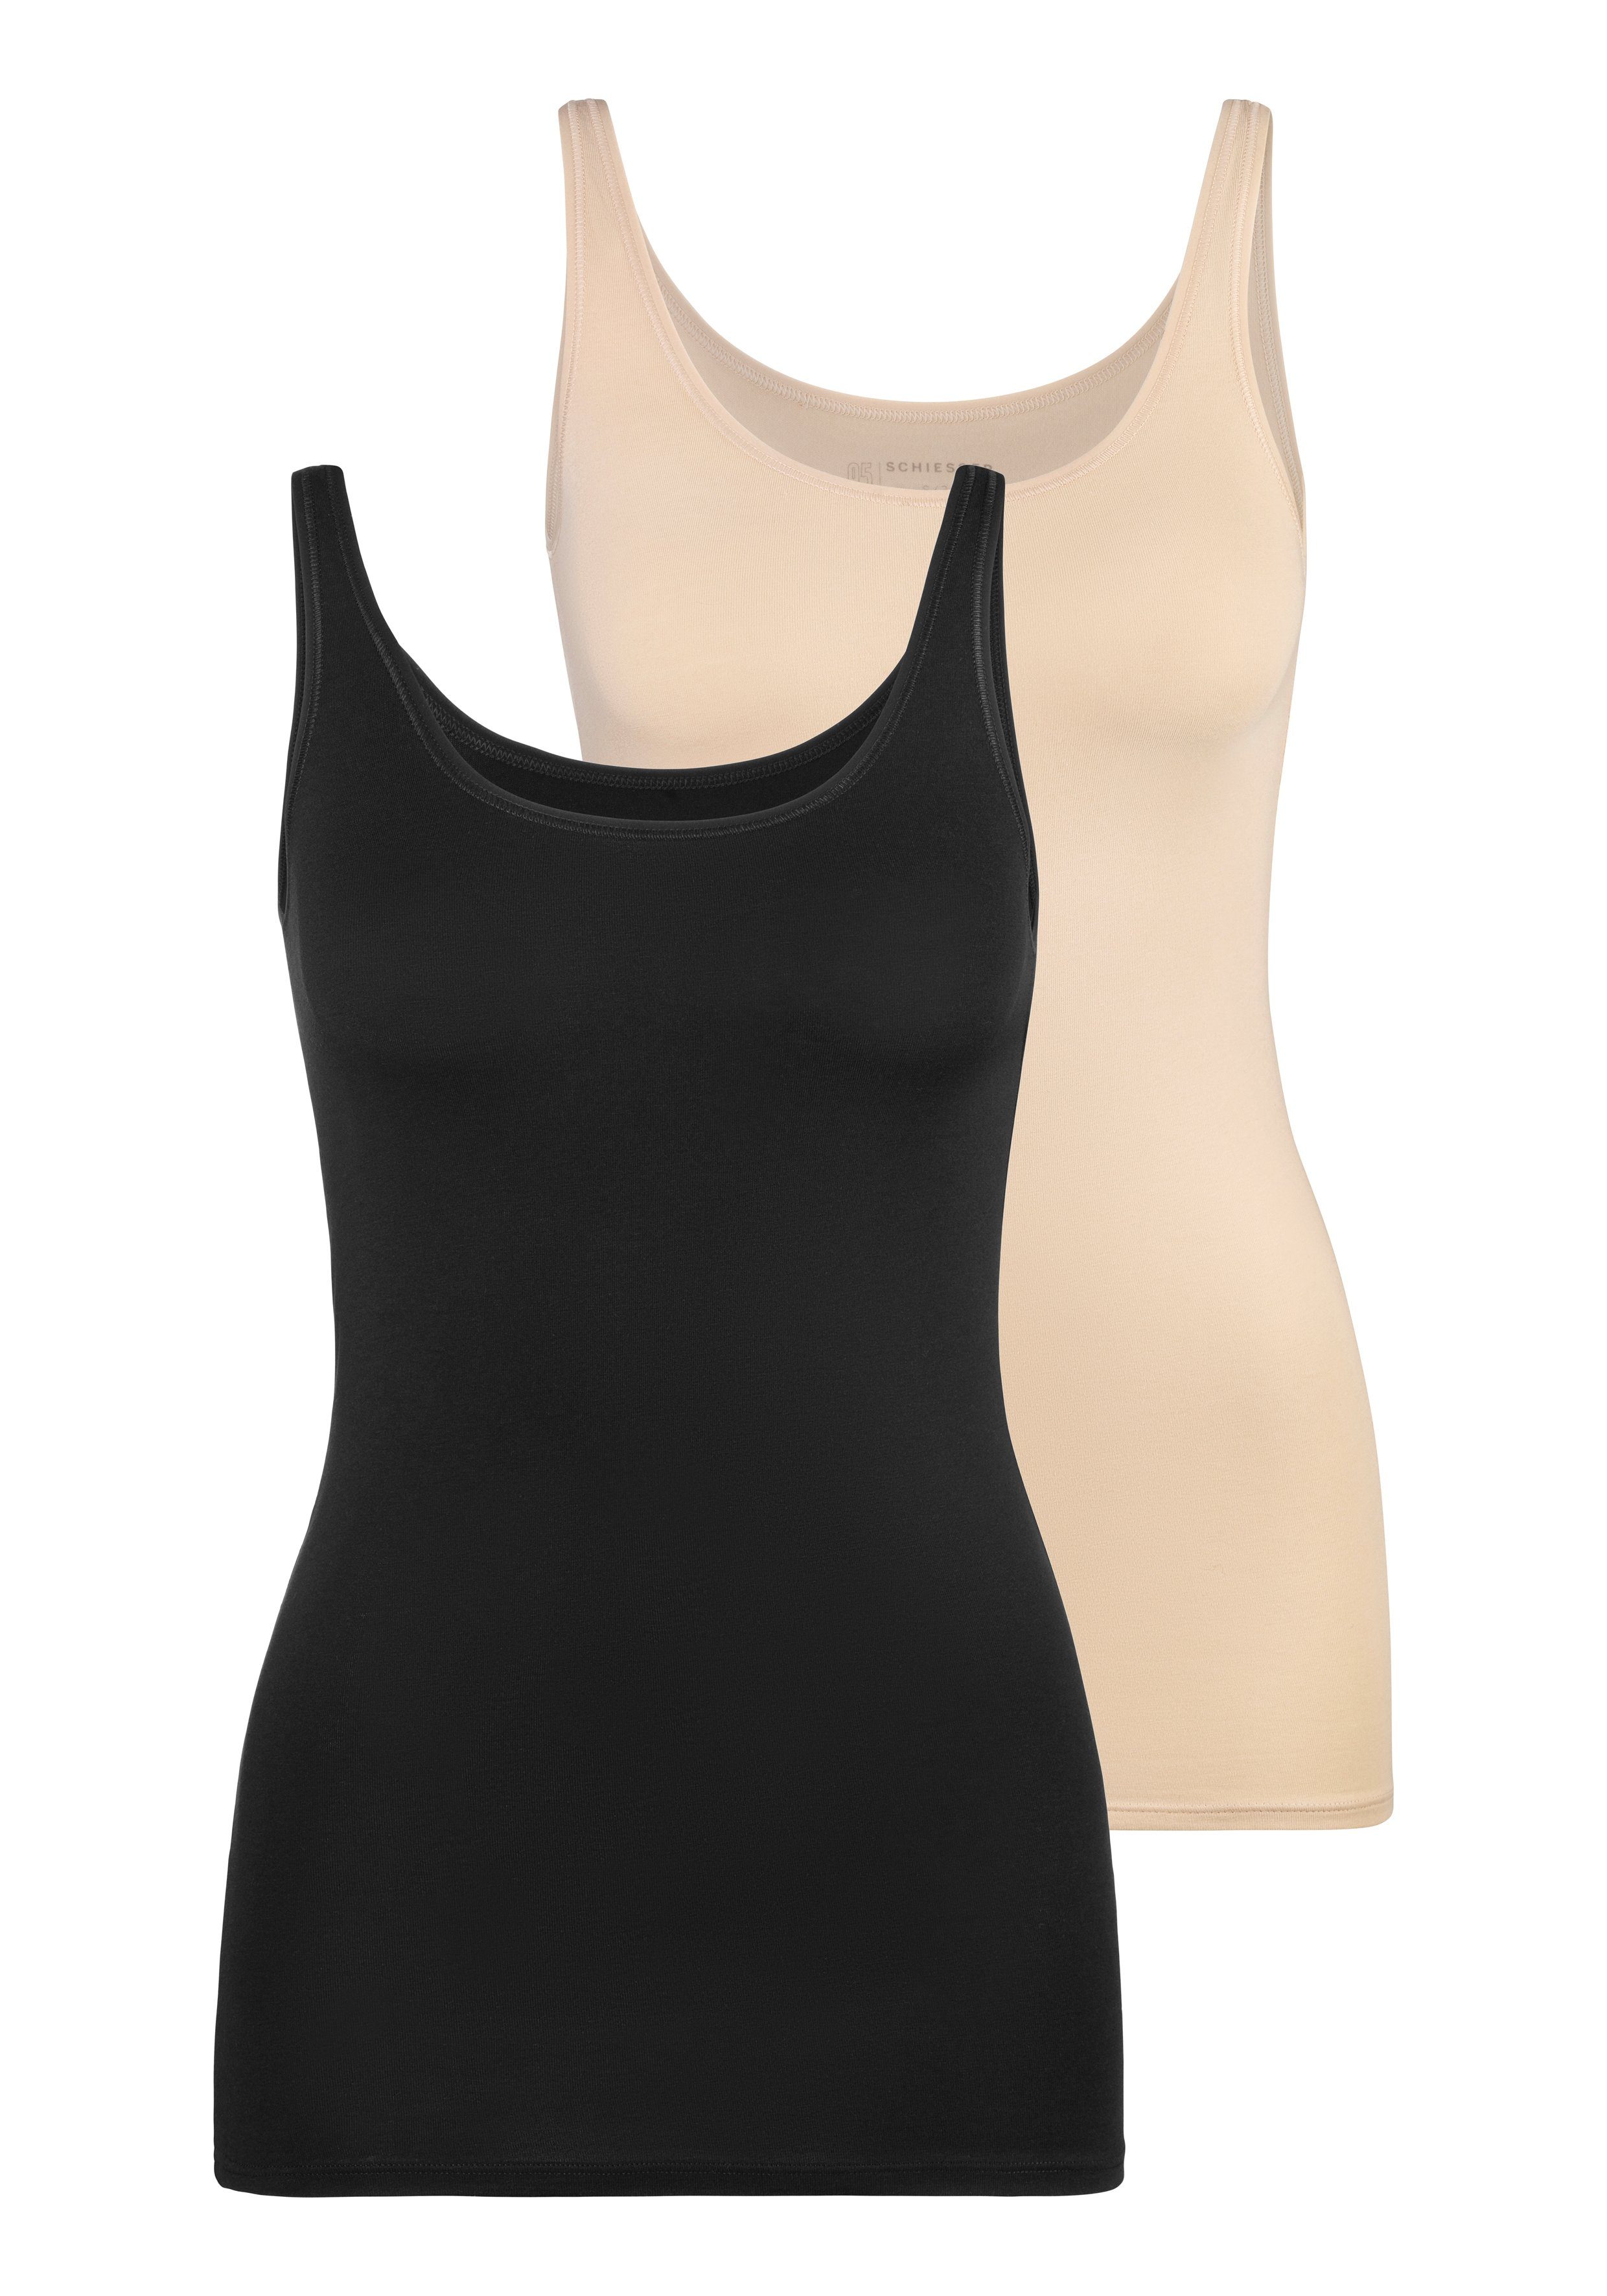 Schiesser Unterhemd (2er-Pack) mit schwarz/sand elastischer Single-Jersey-Qualität